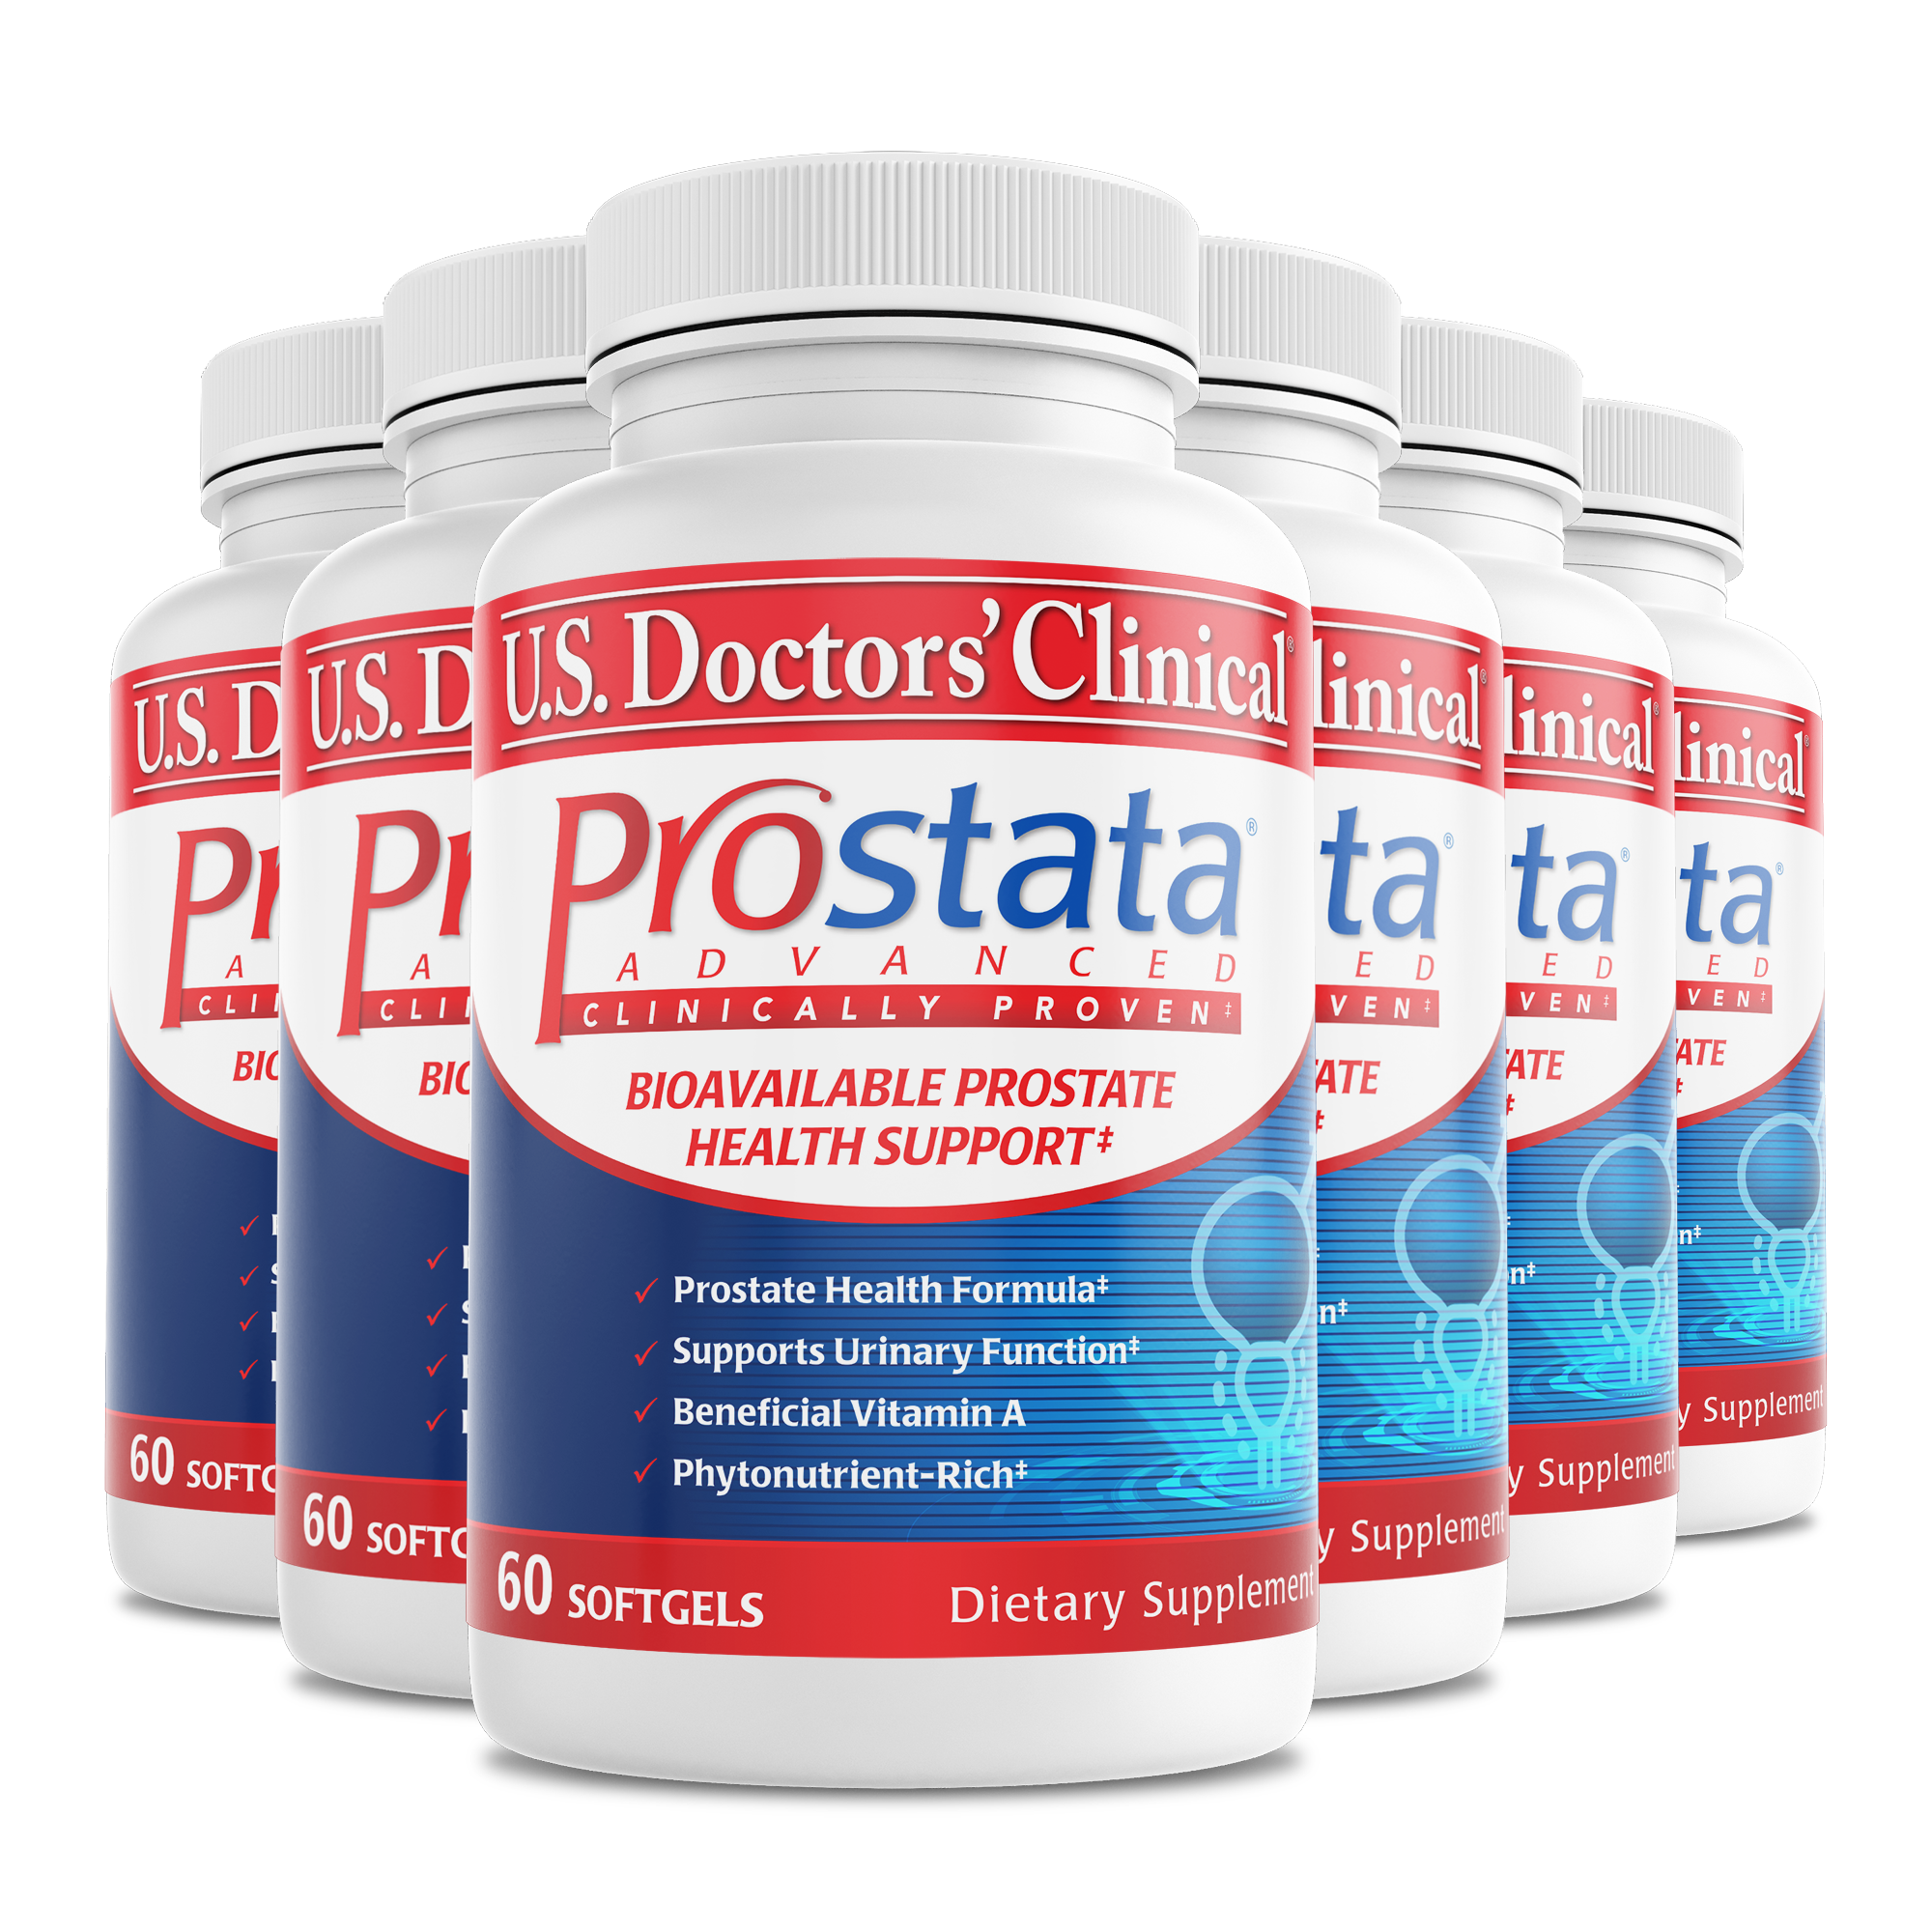 Prostata Advanced bottle 6 pack